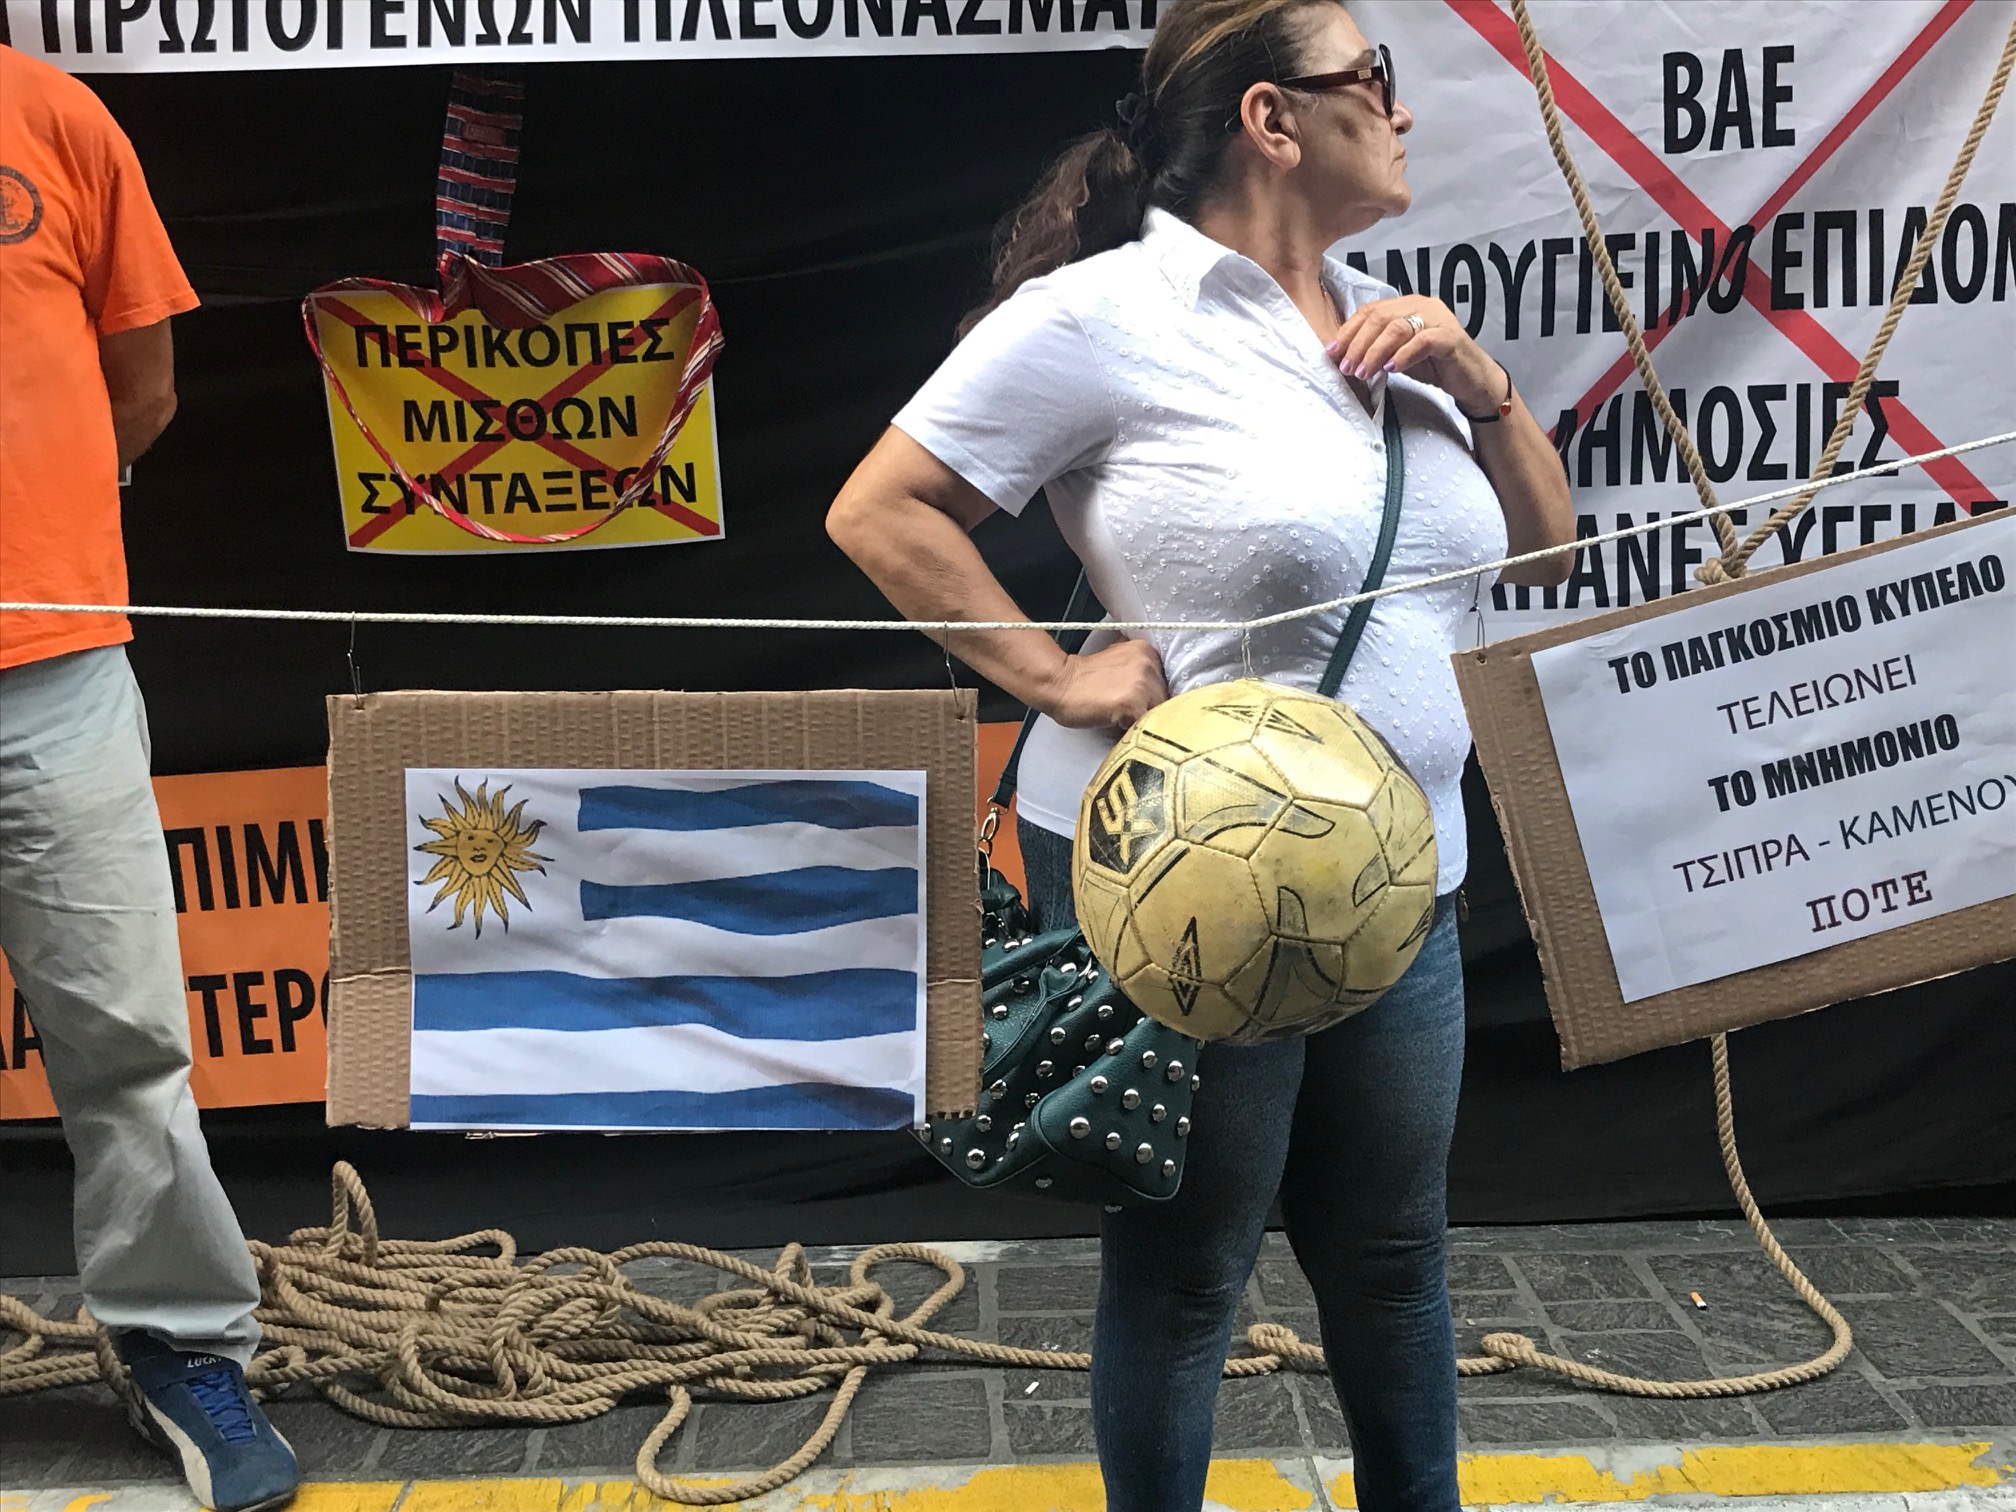 Μέχρι και μπάλες κρέμασαν για την Ουρουγουάη που υποστηρίζει ο Αλέξης Τσίπρας